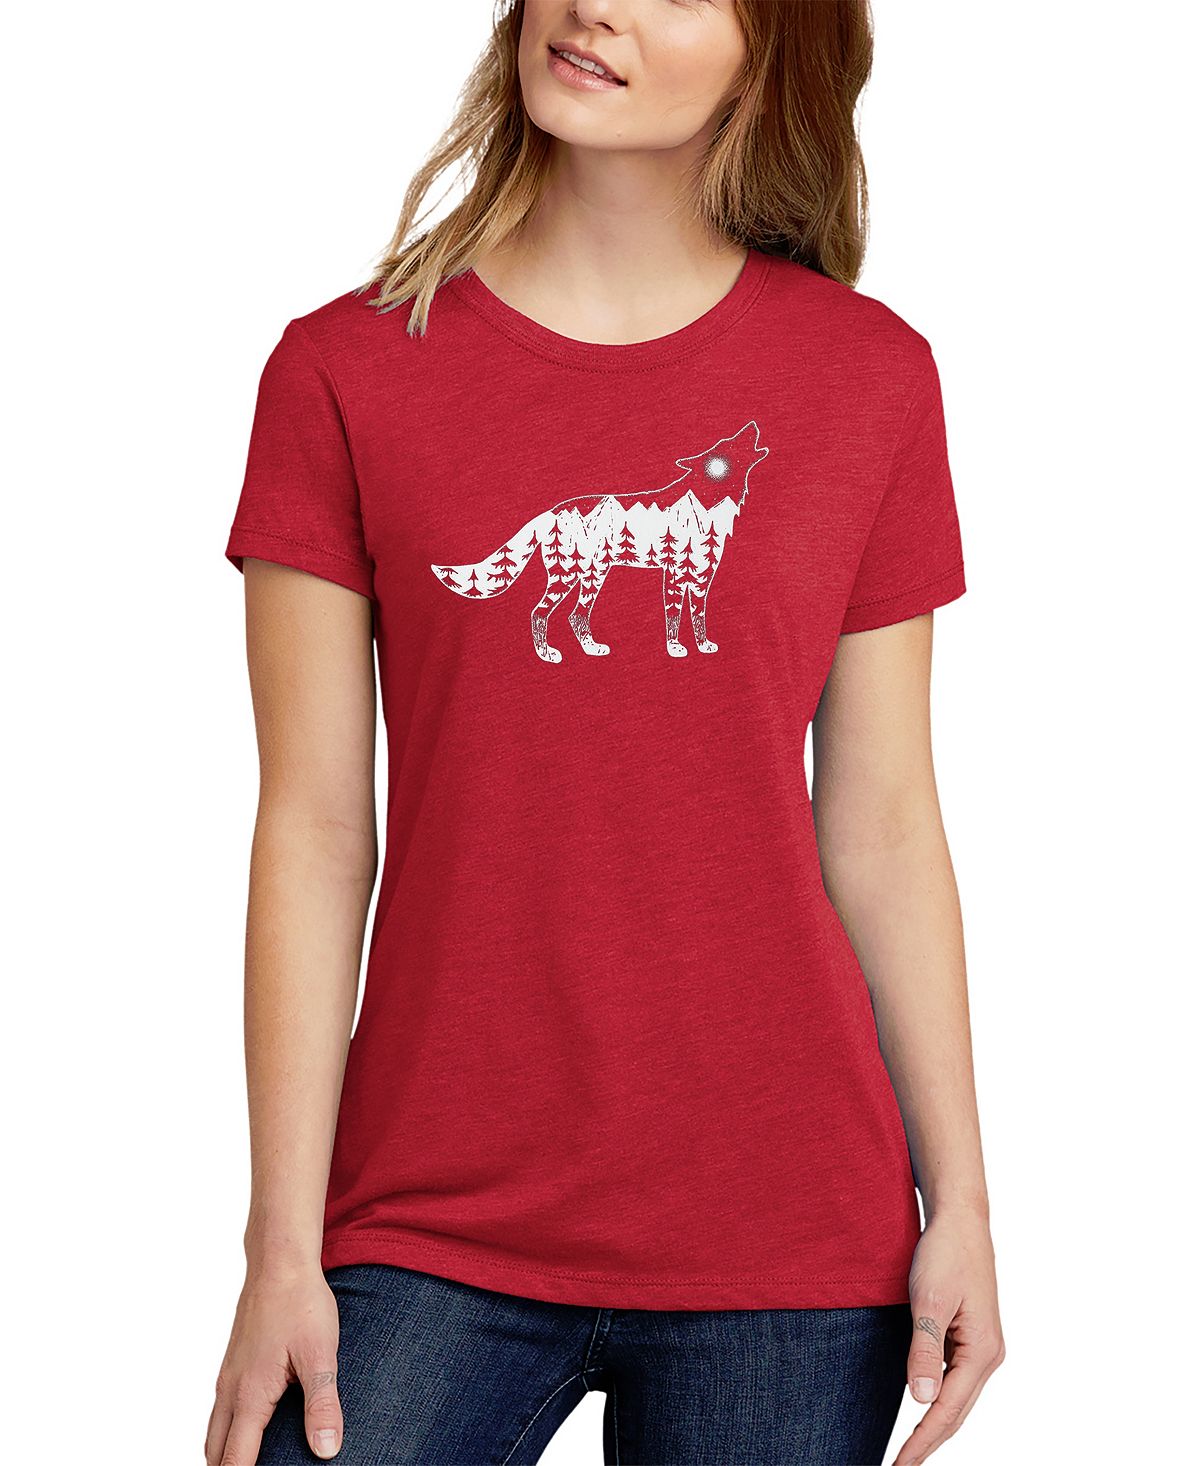 Женская футболка premium blend howling wolf word art LA Pop Art, красный